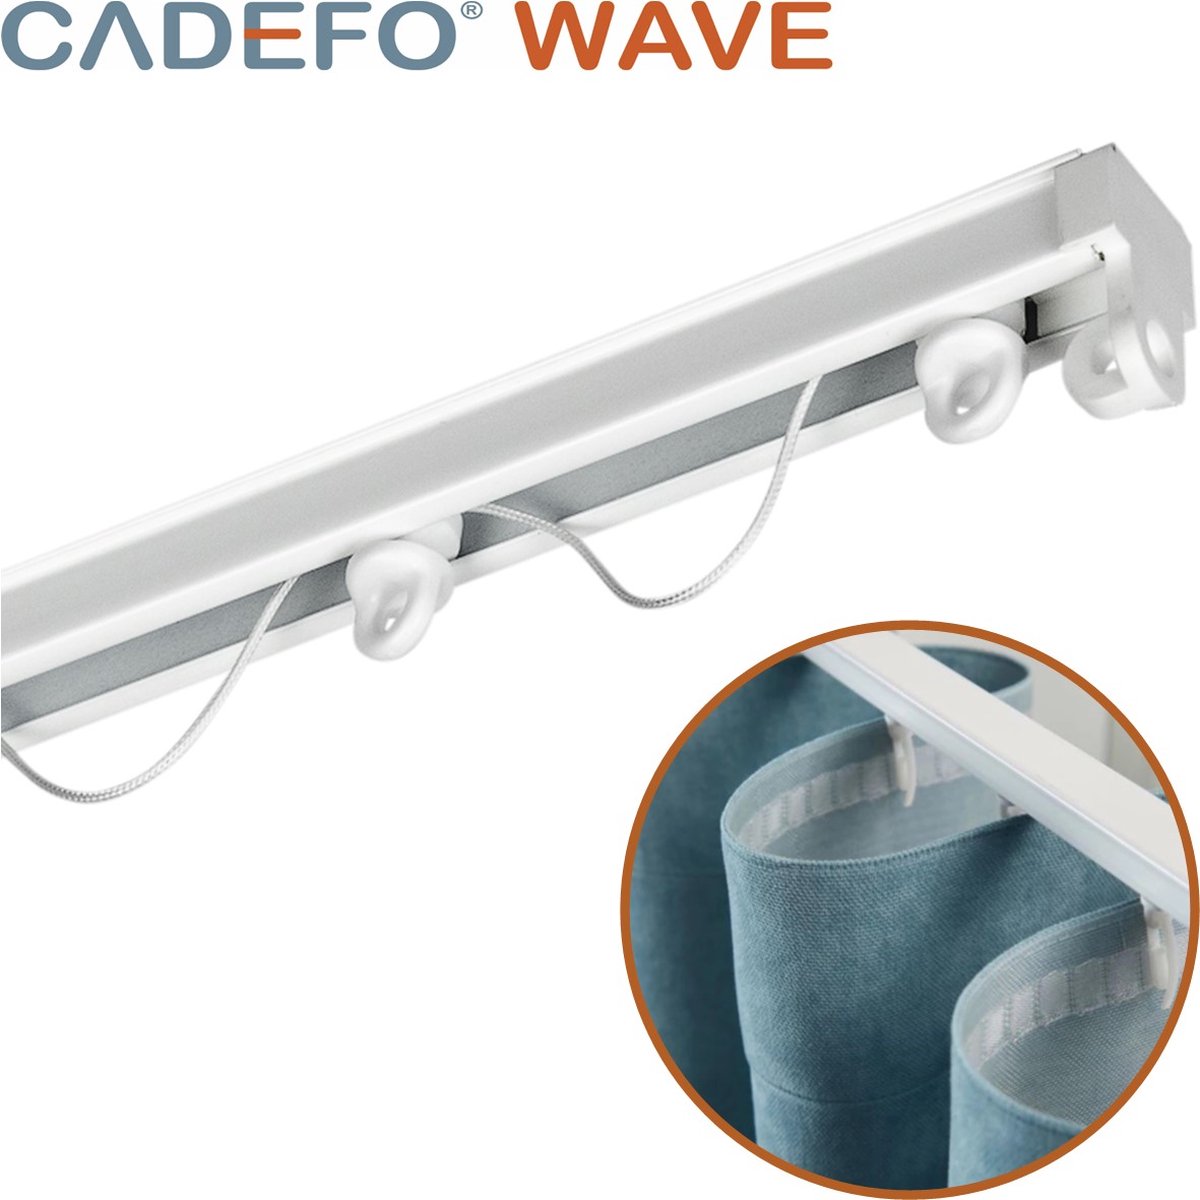 CADEFO WAVE (151 - 200 cm) Gordijnrails - Compleet op maat! - UIT 1 STUK - Leverbaar tot 6 meter - Plafondbevestiging - Lengte 191 cm